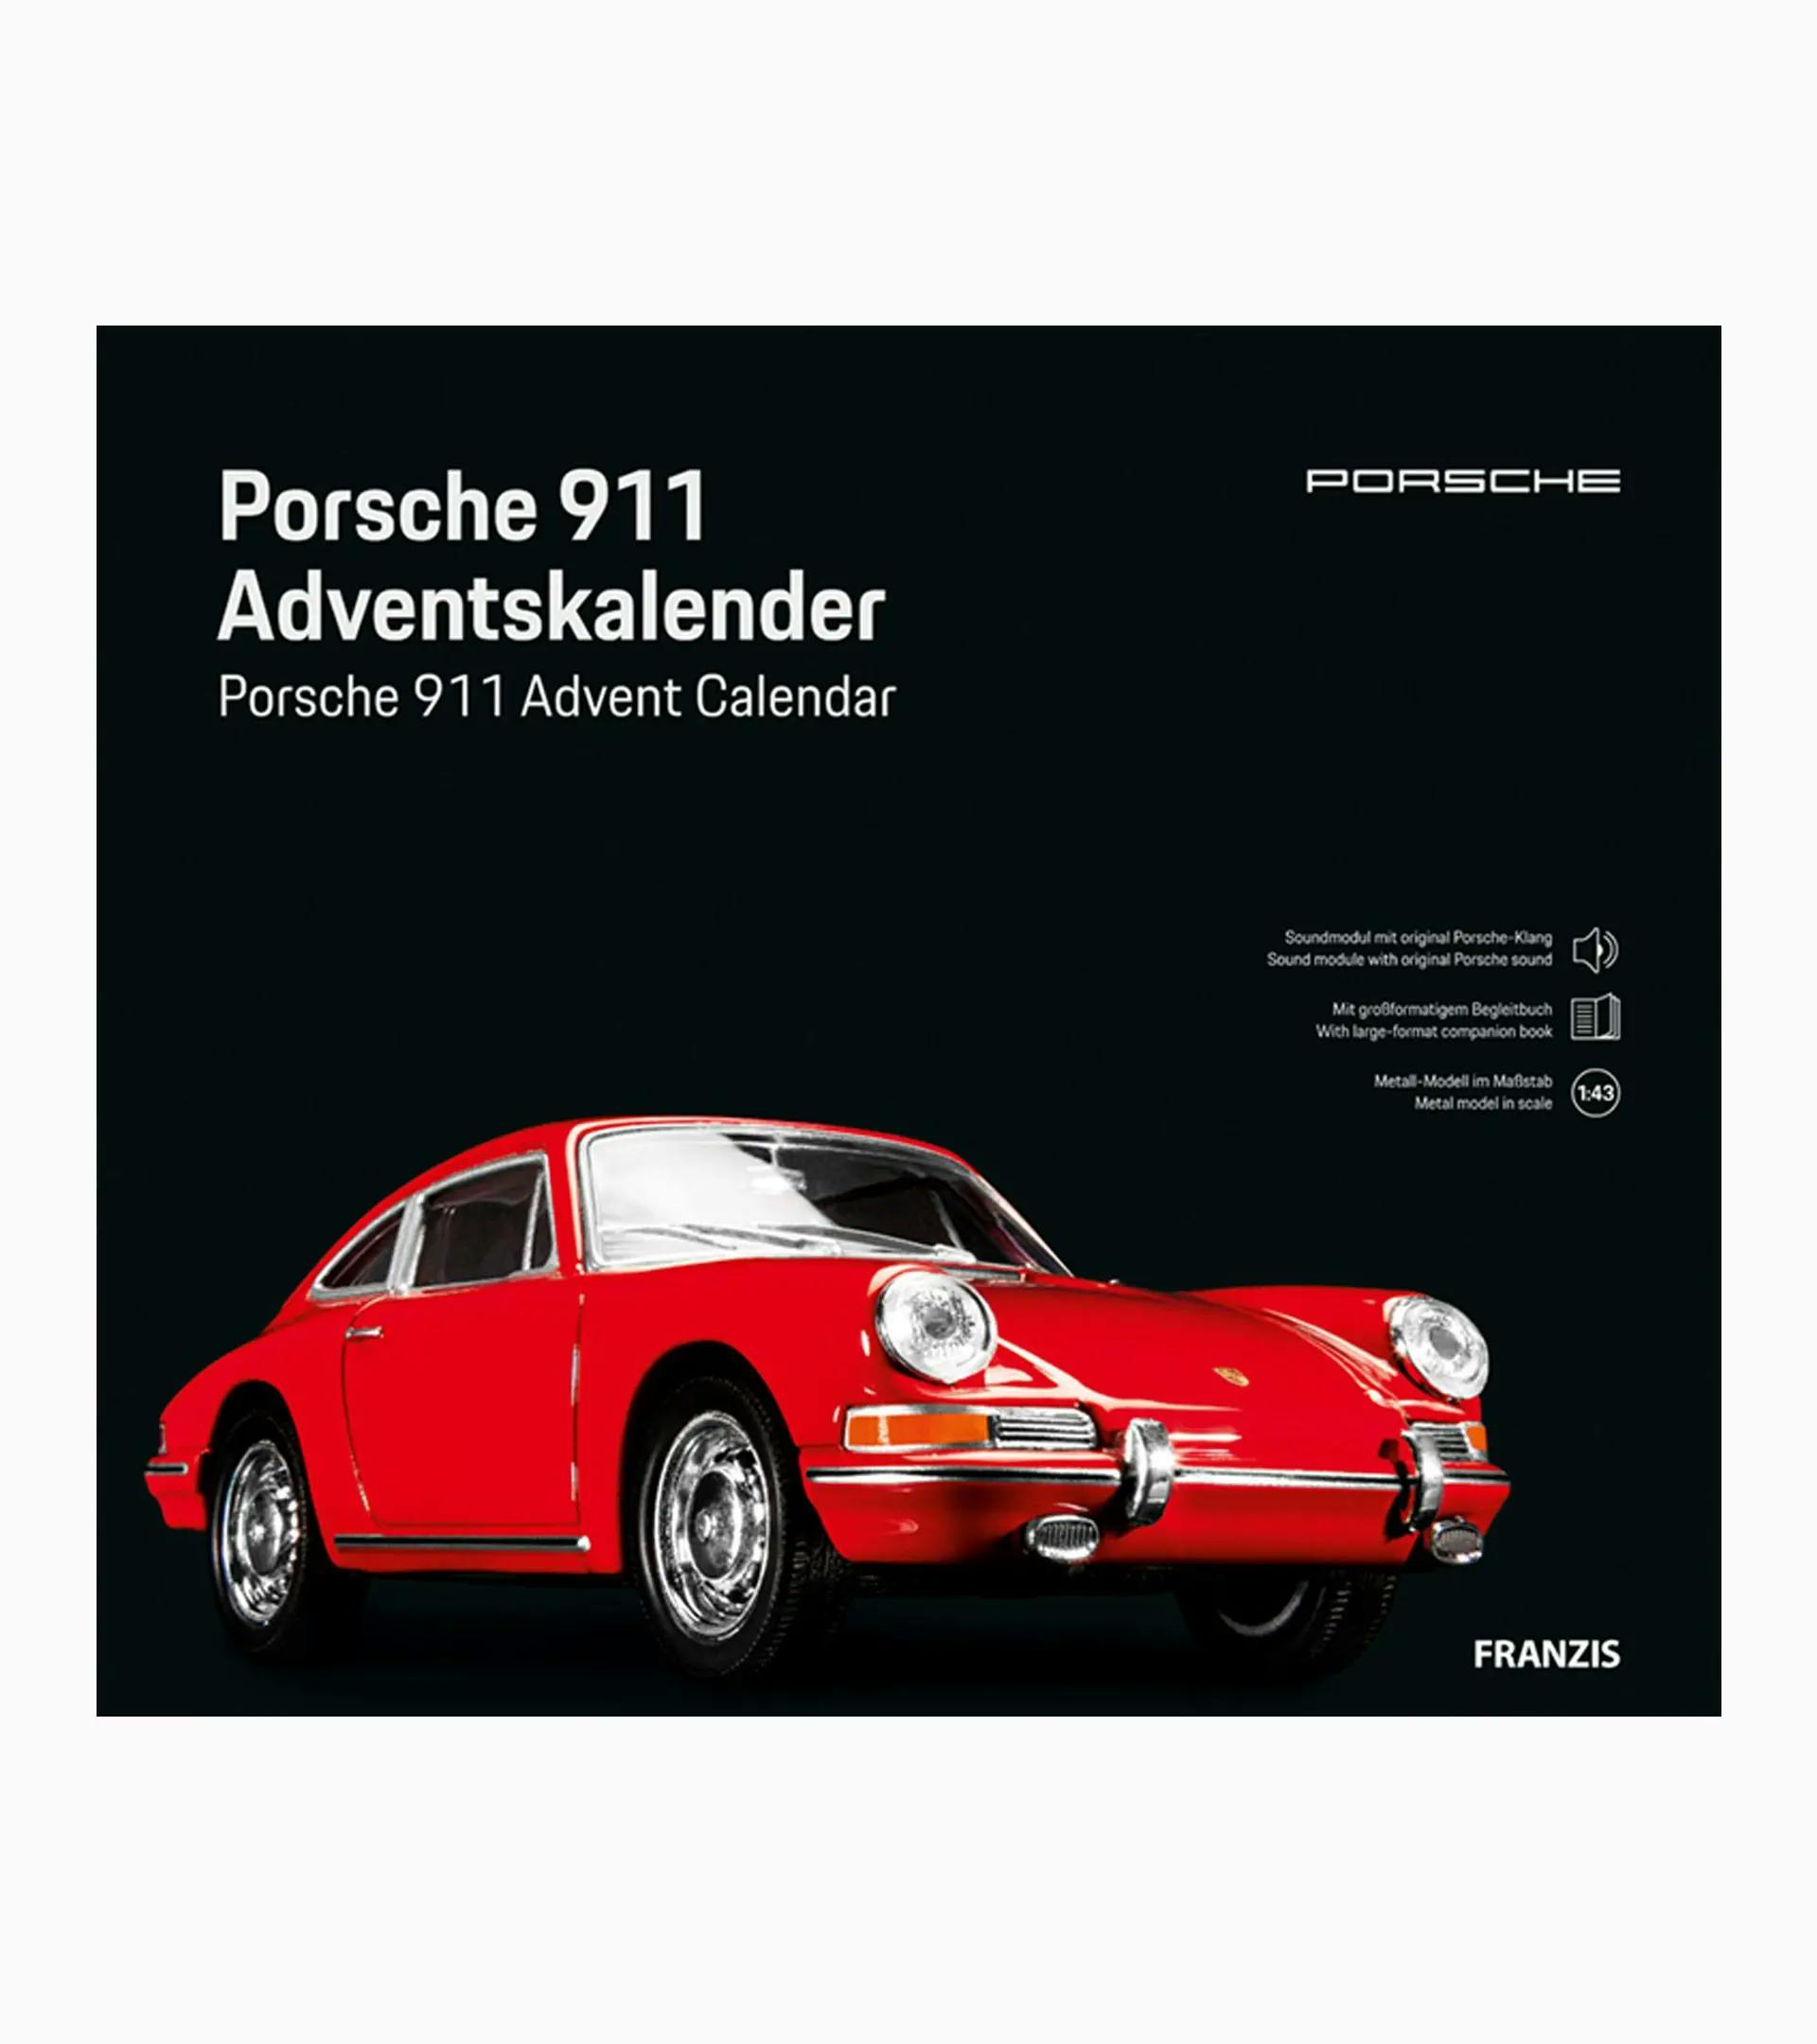 Porsche 911 Adventskalender 2